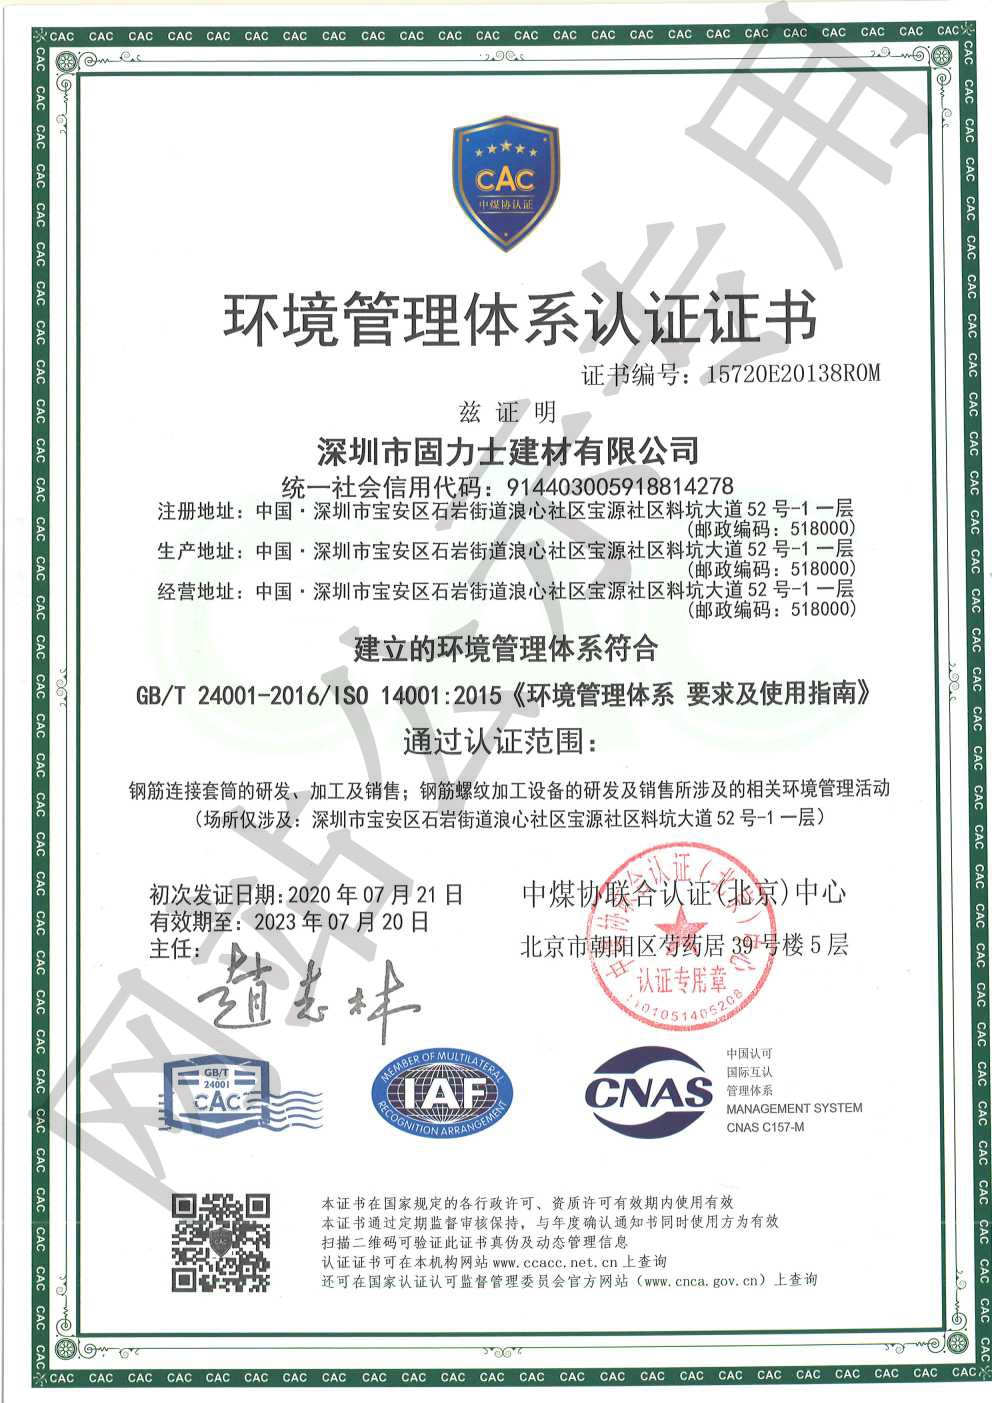 彬村山华侨农场ISO14001证书